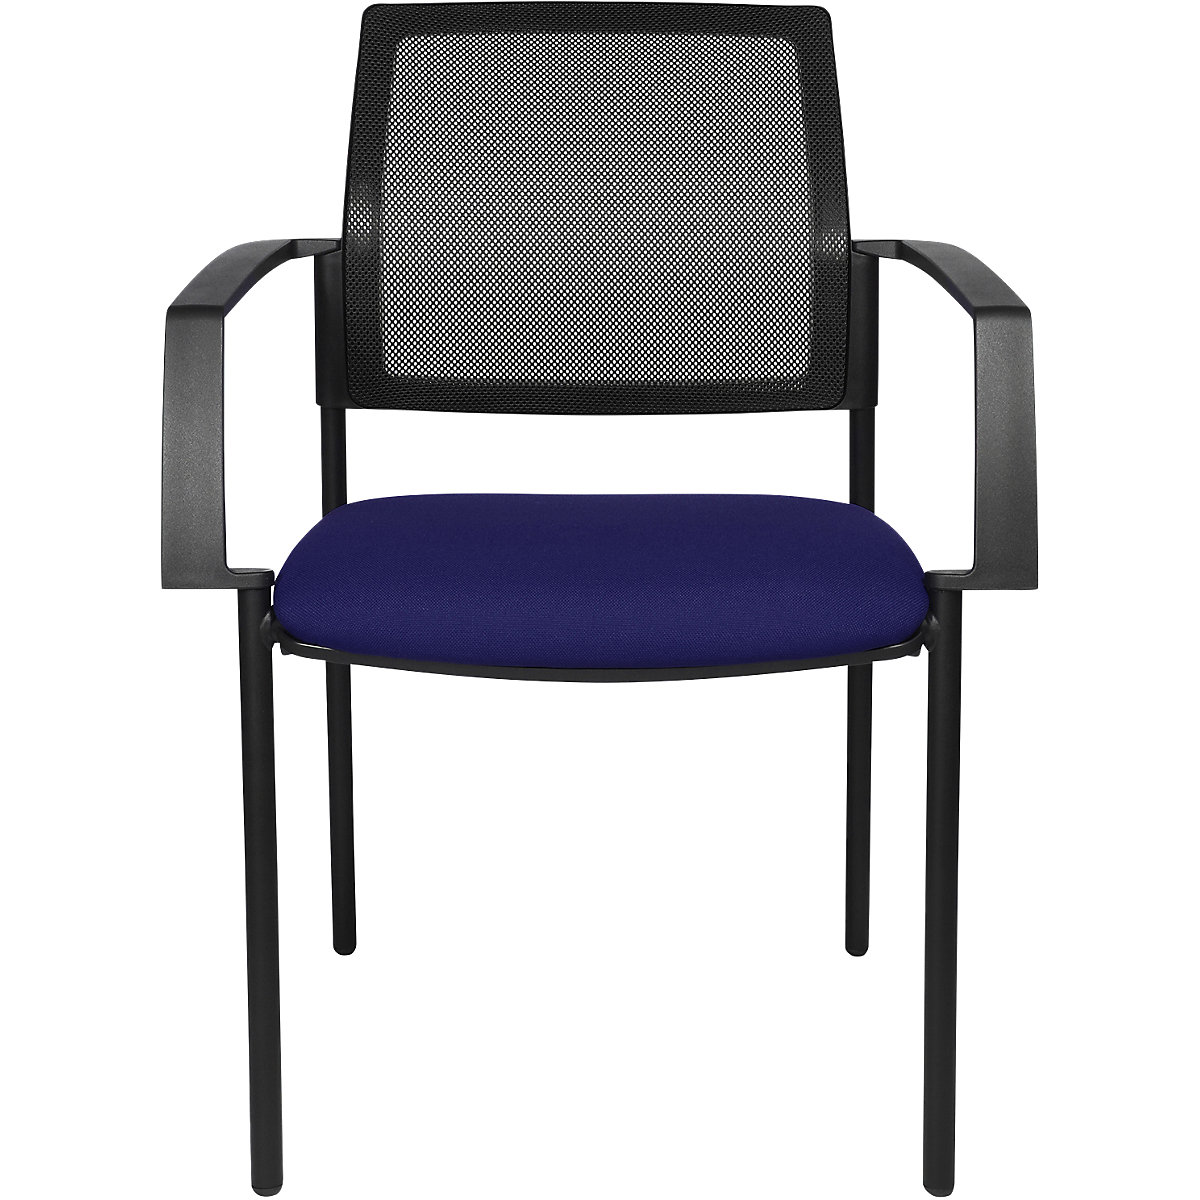 Složiva stolica s mrežastim naslonom – Topstar, 4 noge, pak. 2 kom., sjedalo u plavoj boji, postolje u crnoj boji